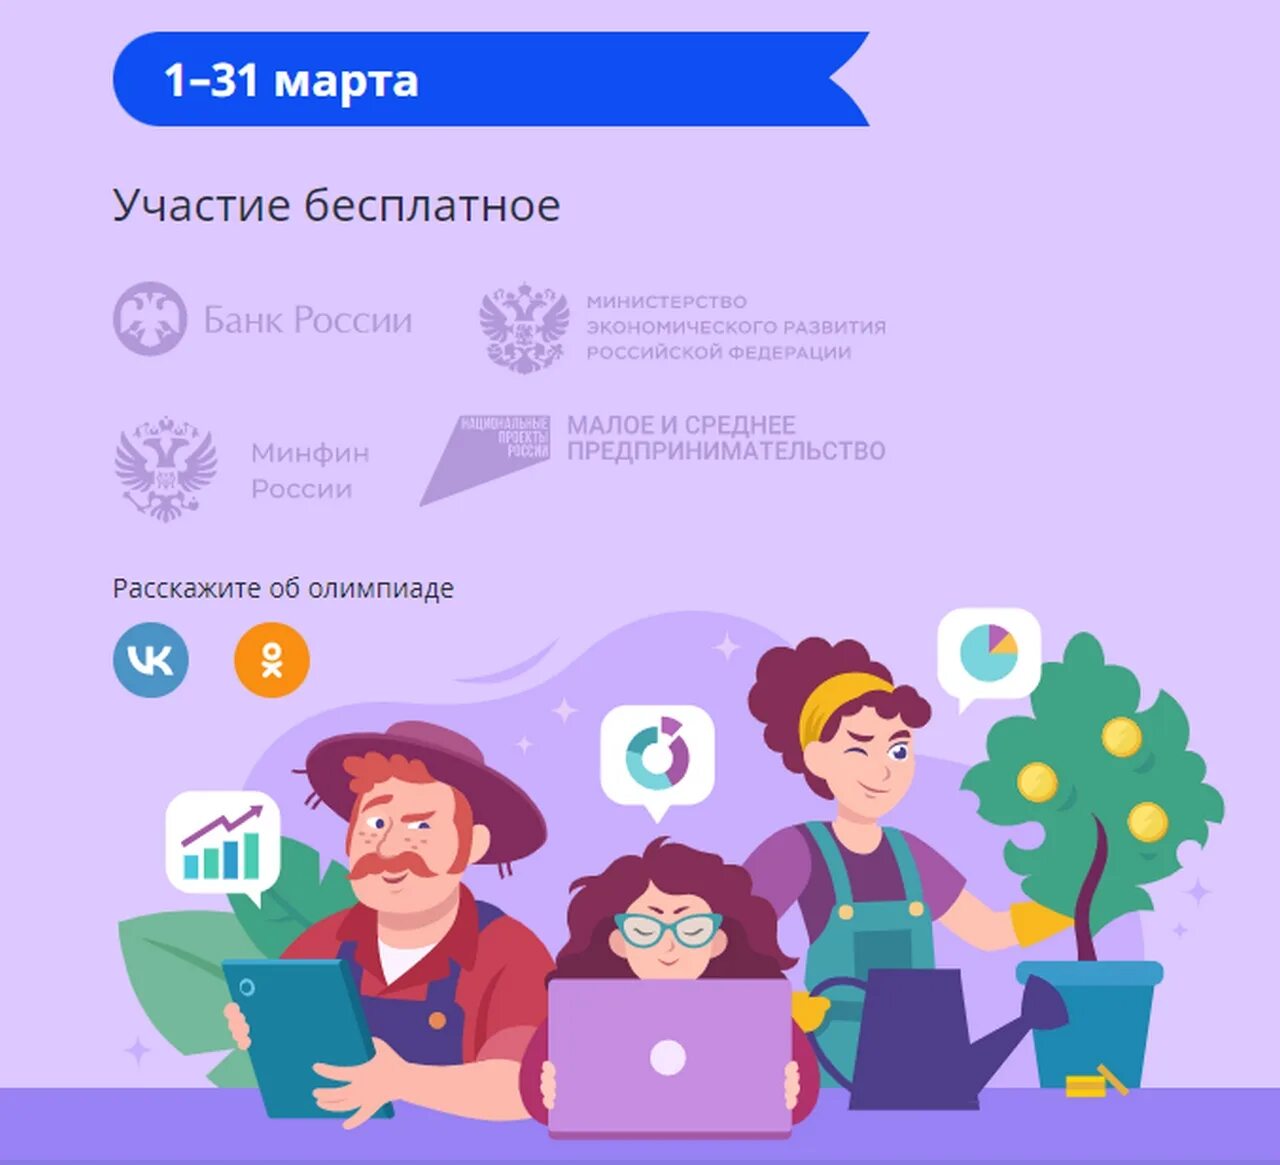 Учи русский ответы финансовая грамотность